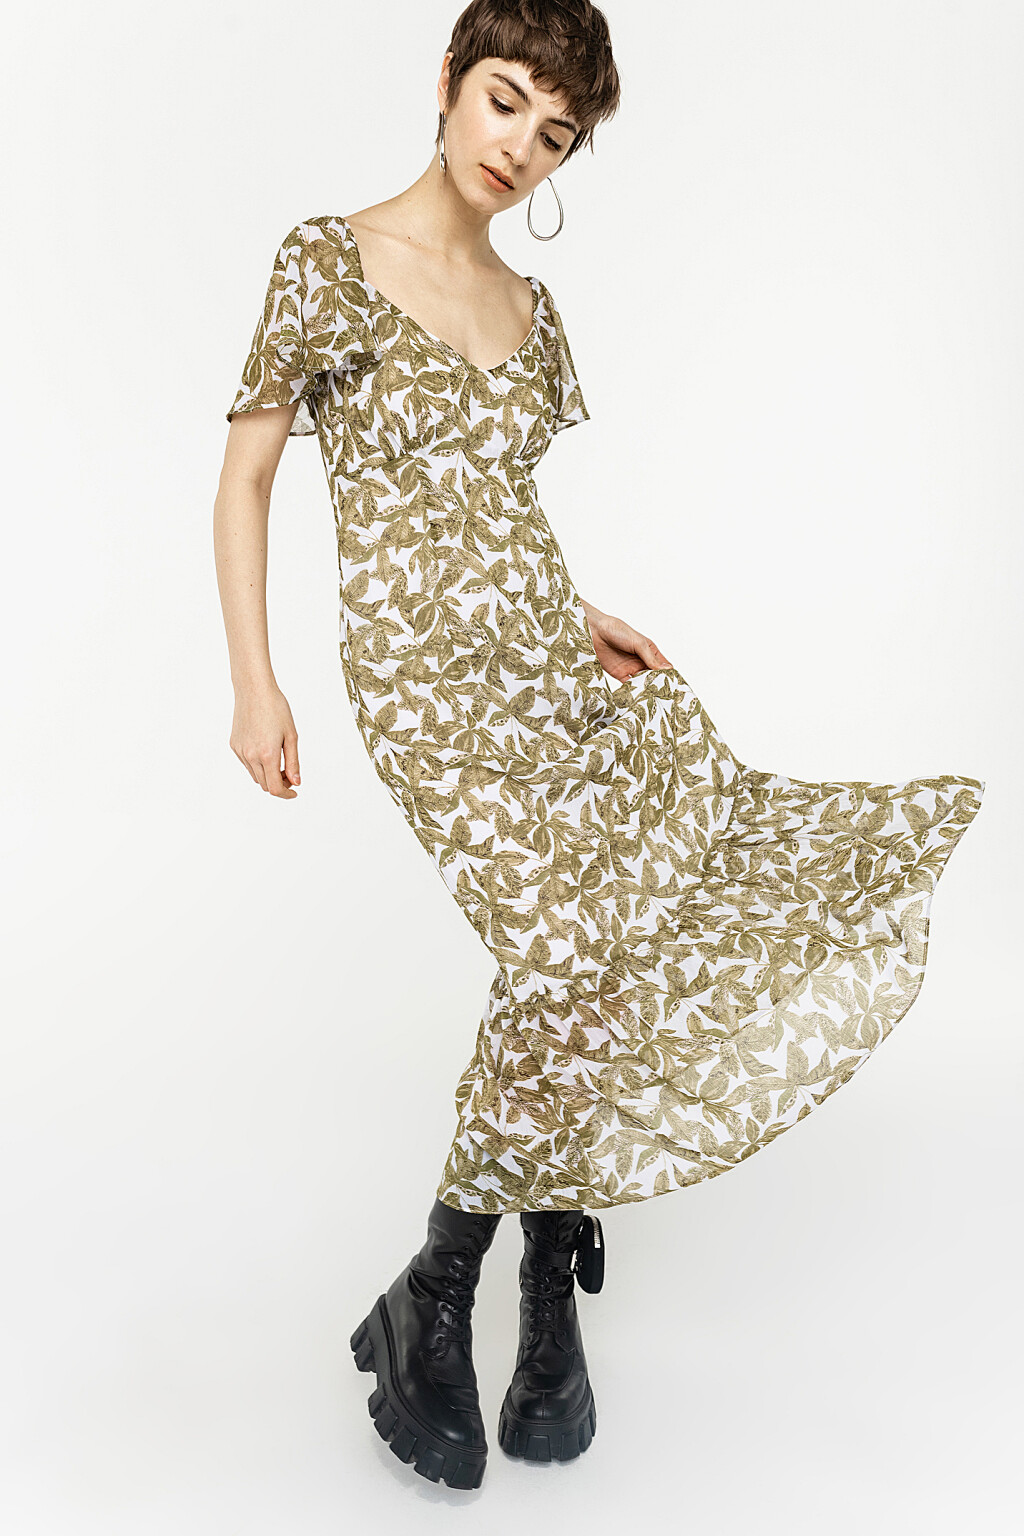 Платье длинное с рукавами-воланами 2021262543$D, цвет: зеленый (132) по цене 1199 рублей - купить в Интернет-магазине «Befree»